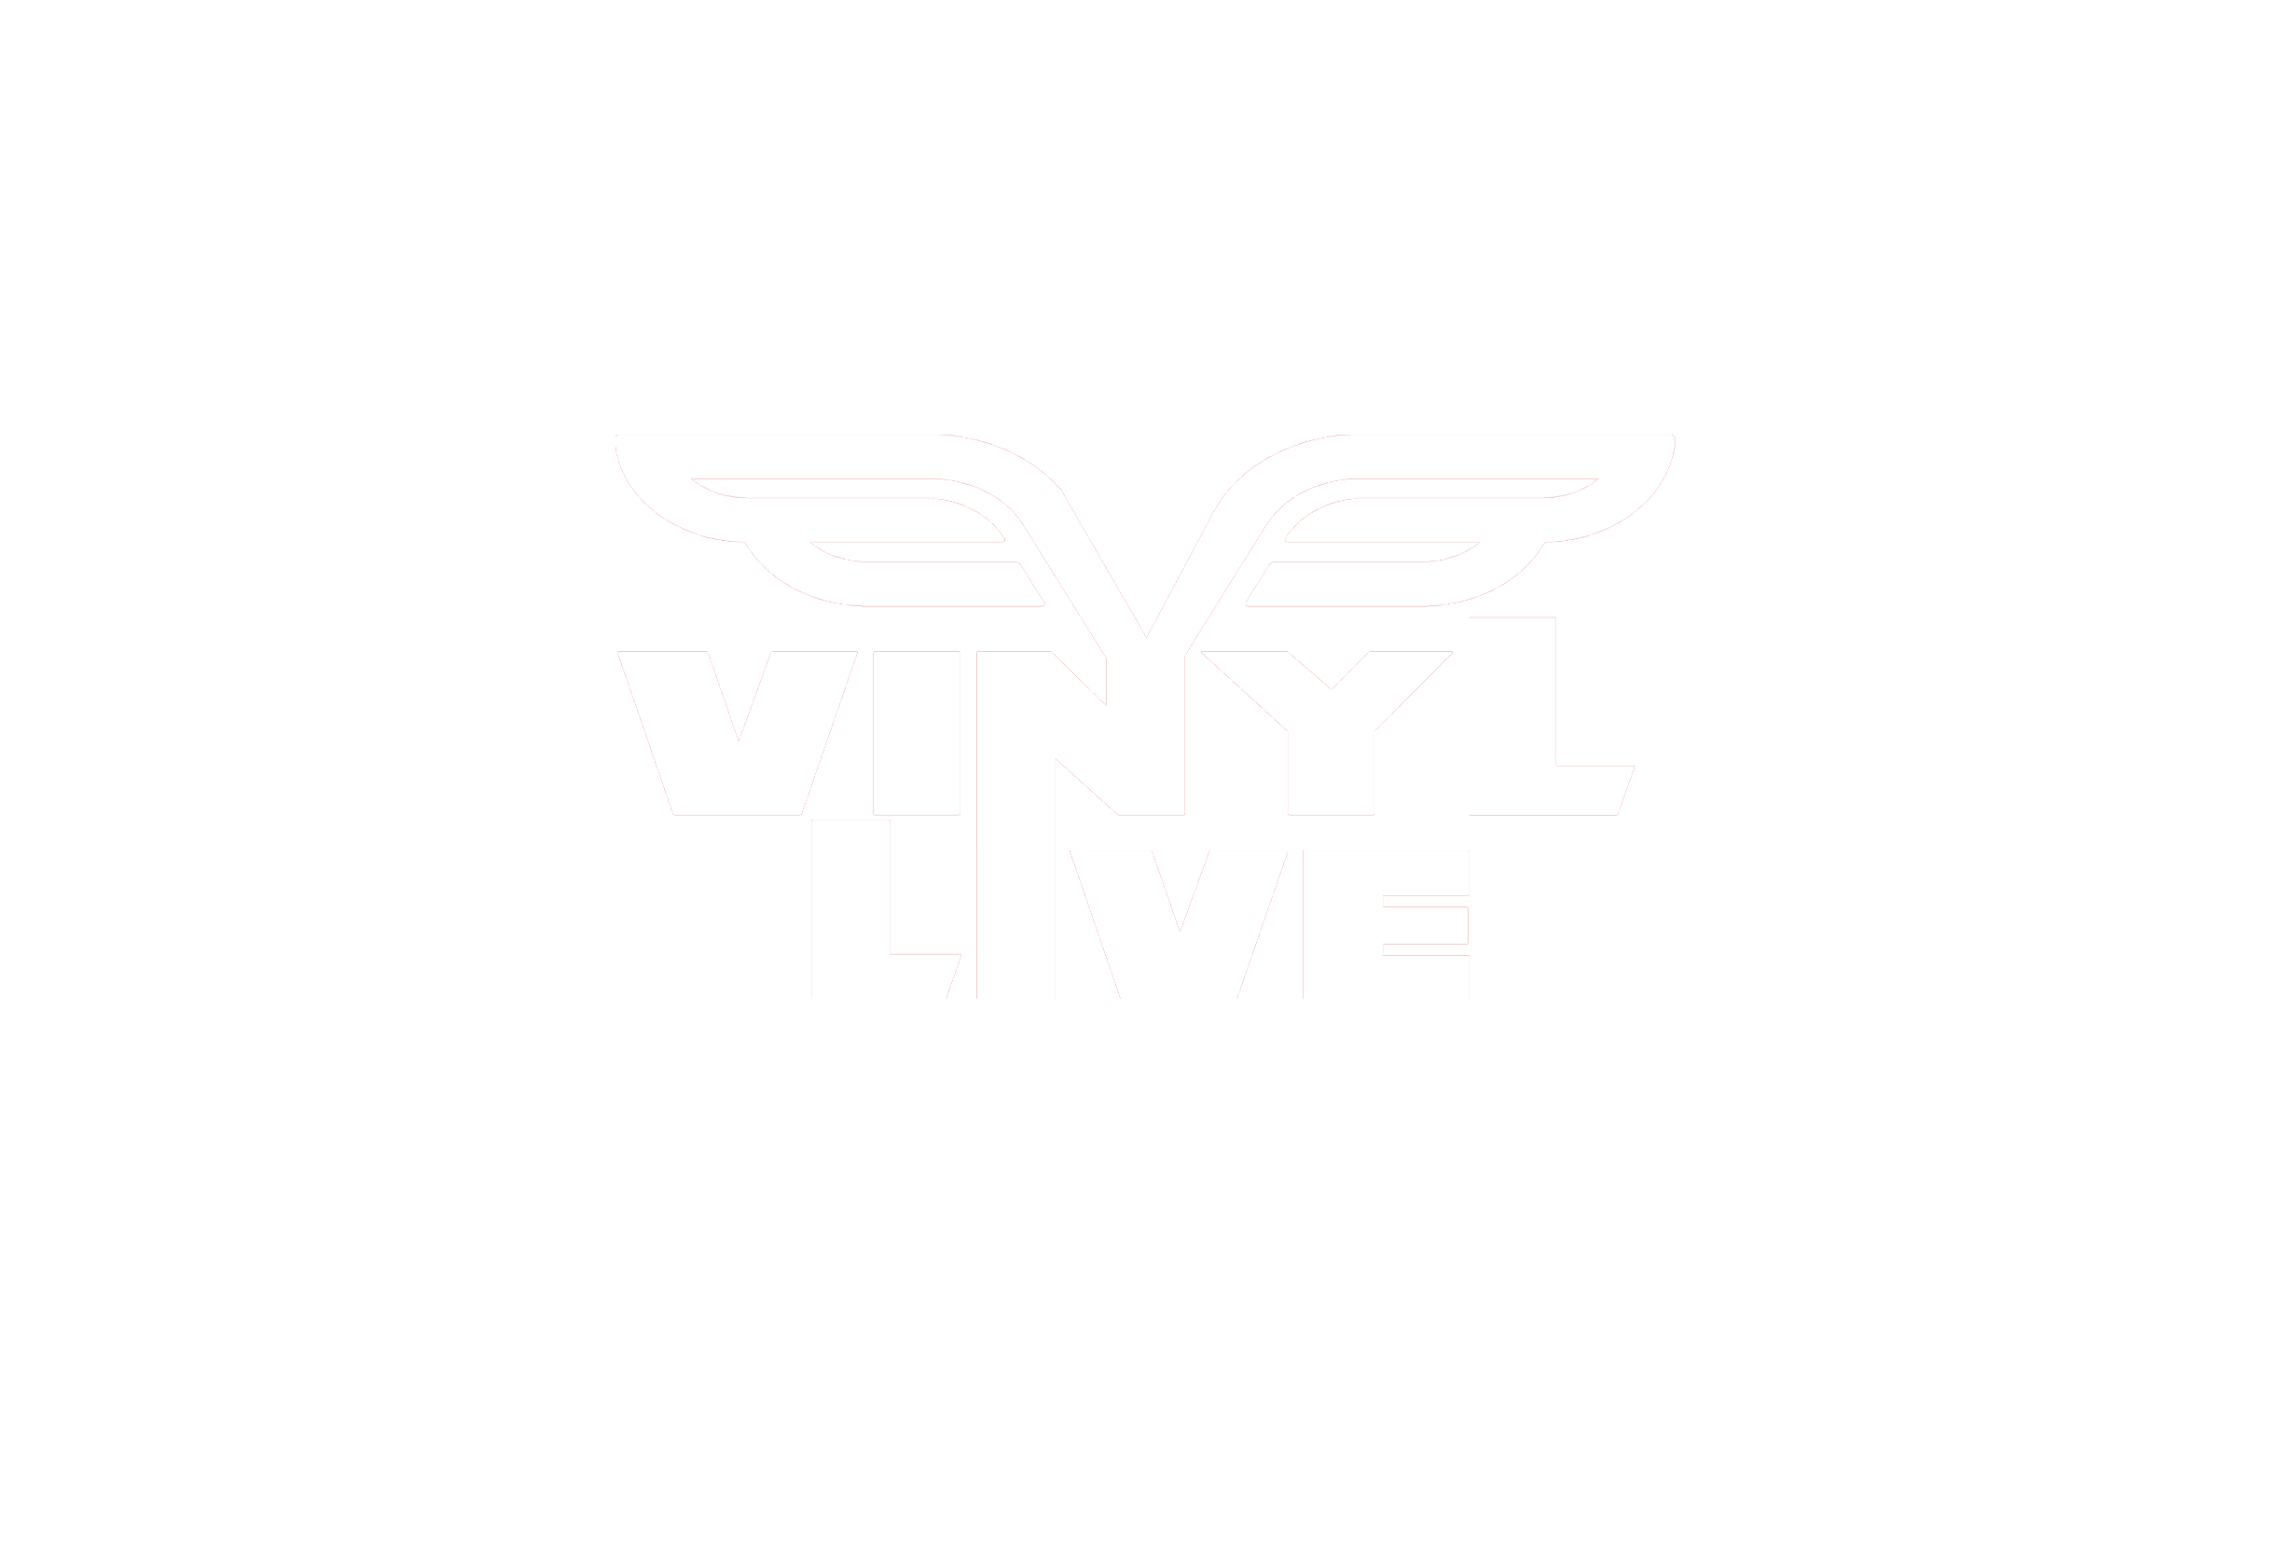 Vinyl Live